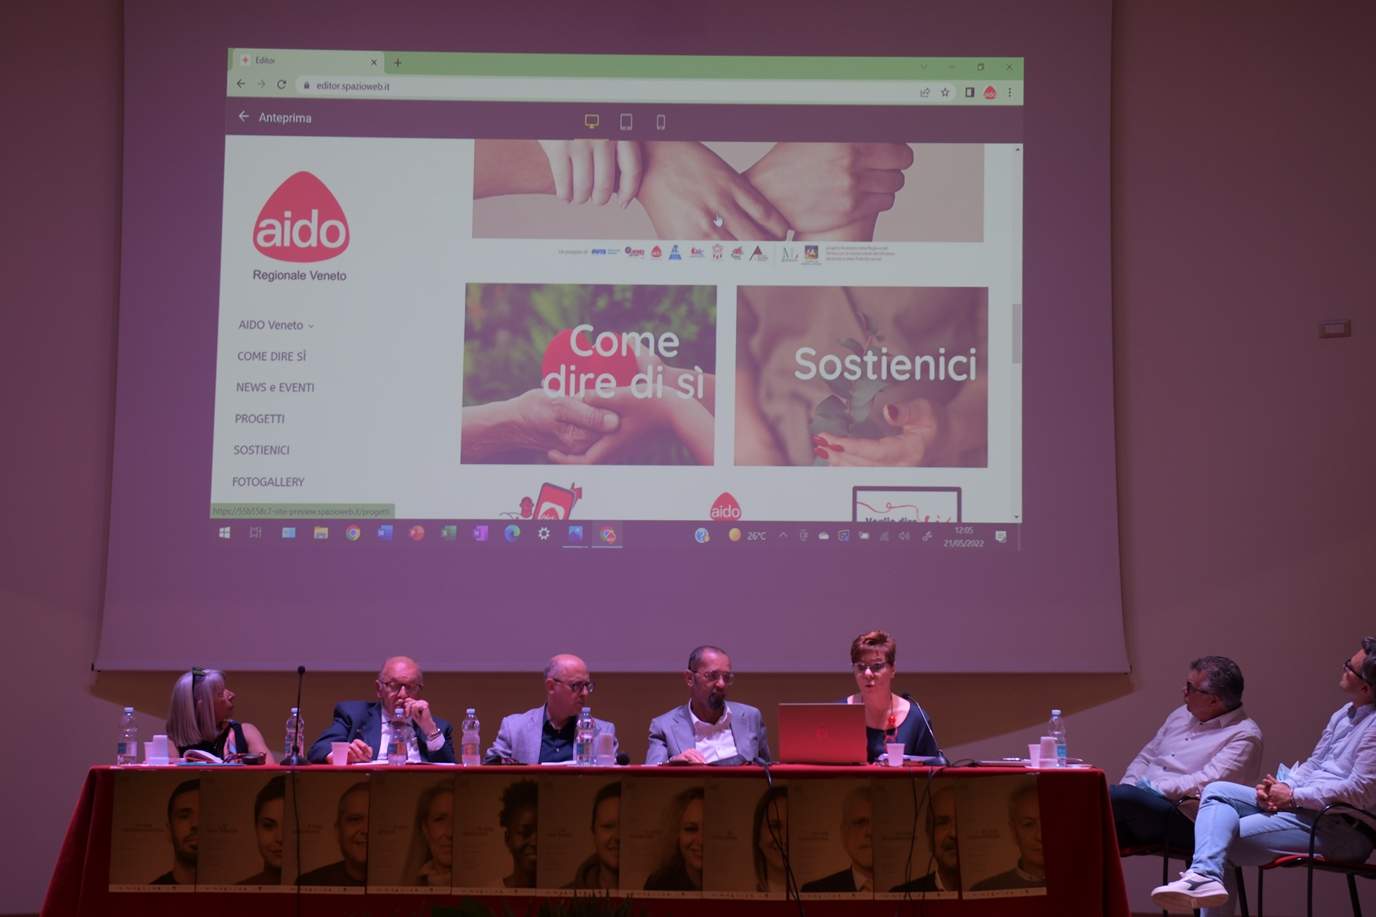 Presentazione sito www.aidoveneto.it